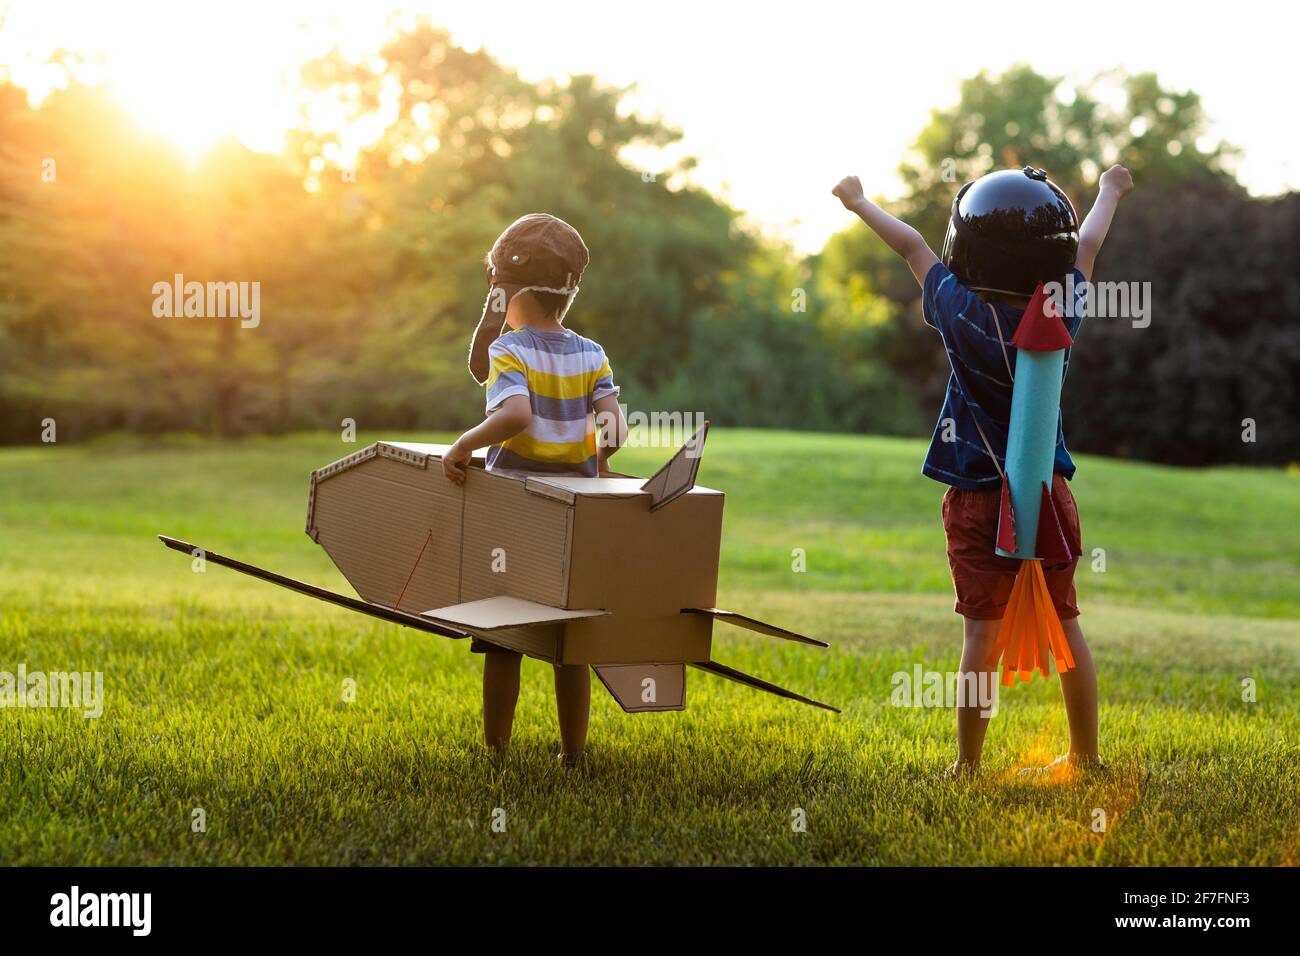 Petits garçons en costume jouant sur la prairie Banque D'Images